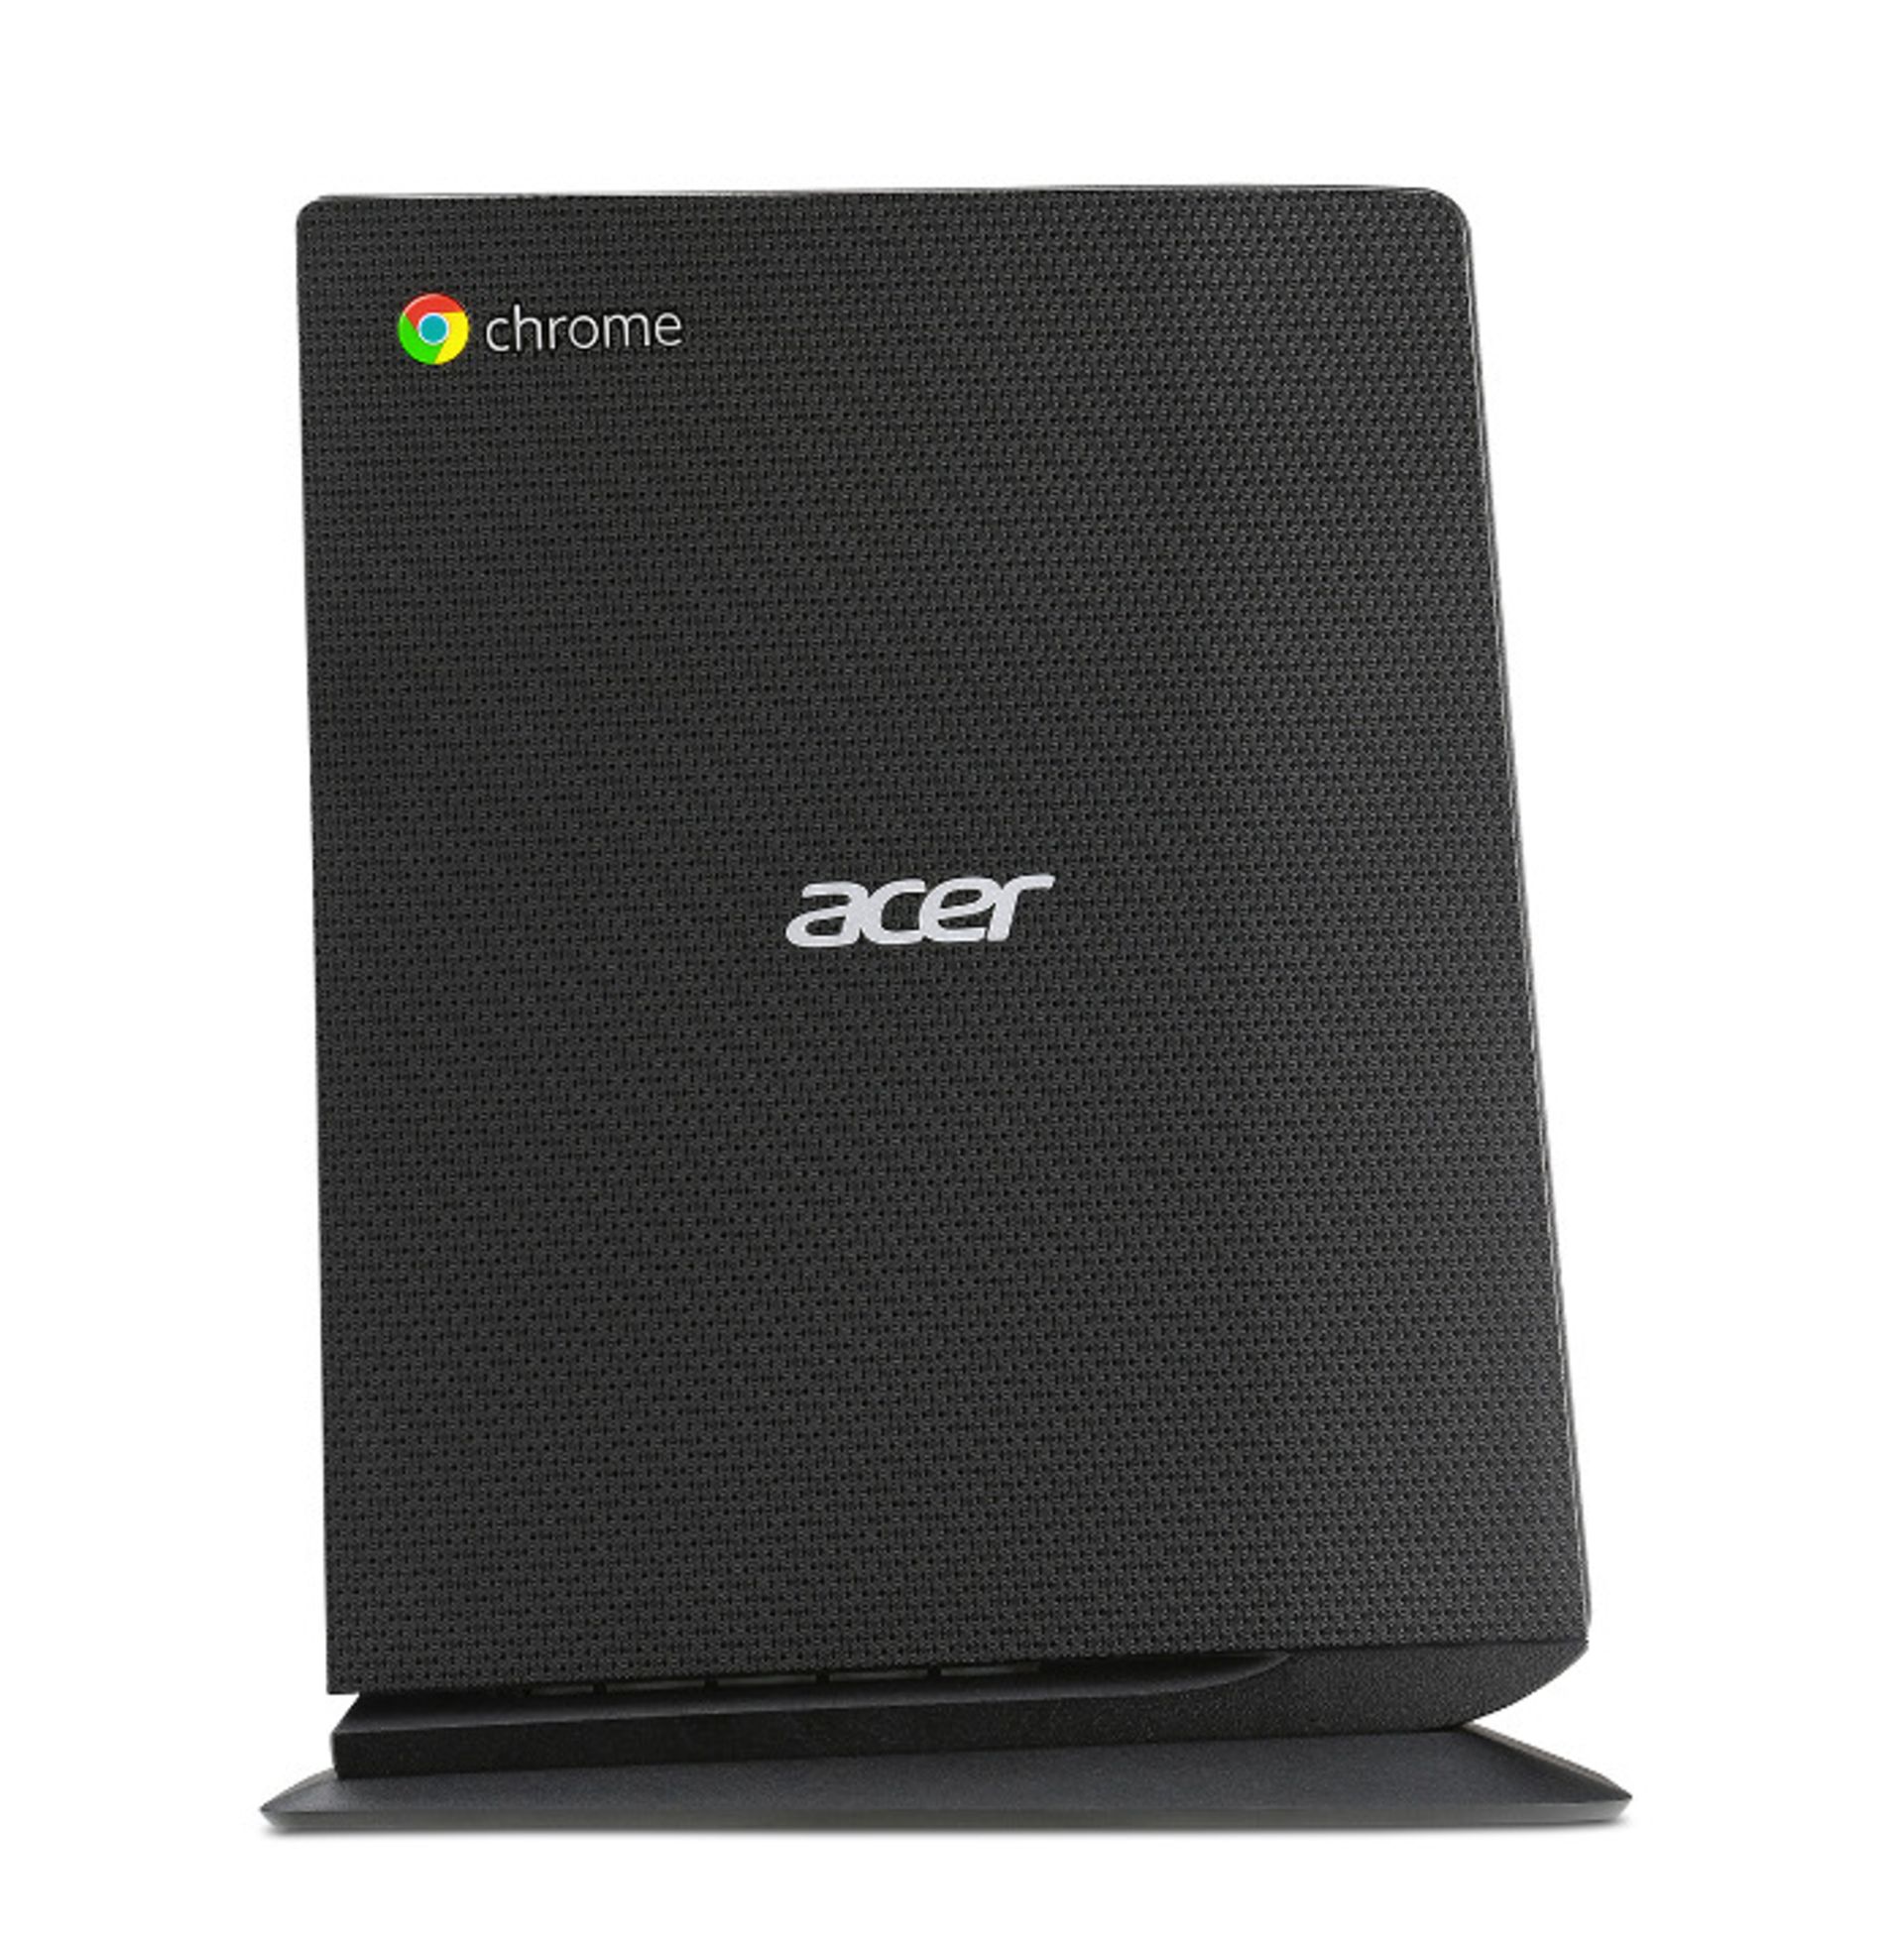 Acer-Chromebox-CXI side